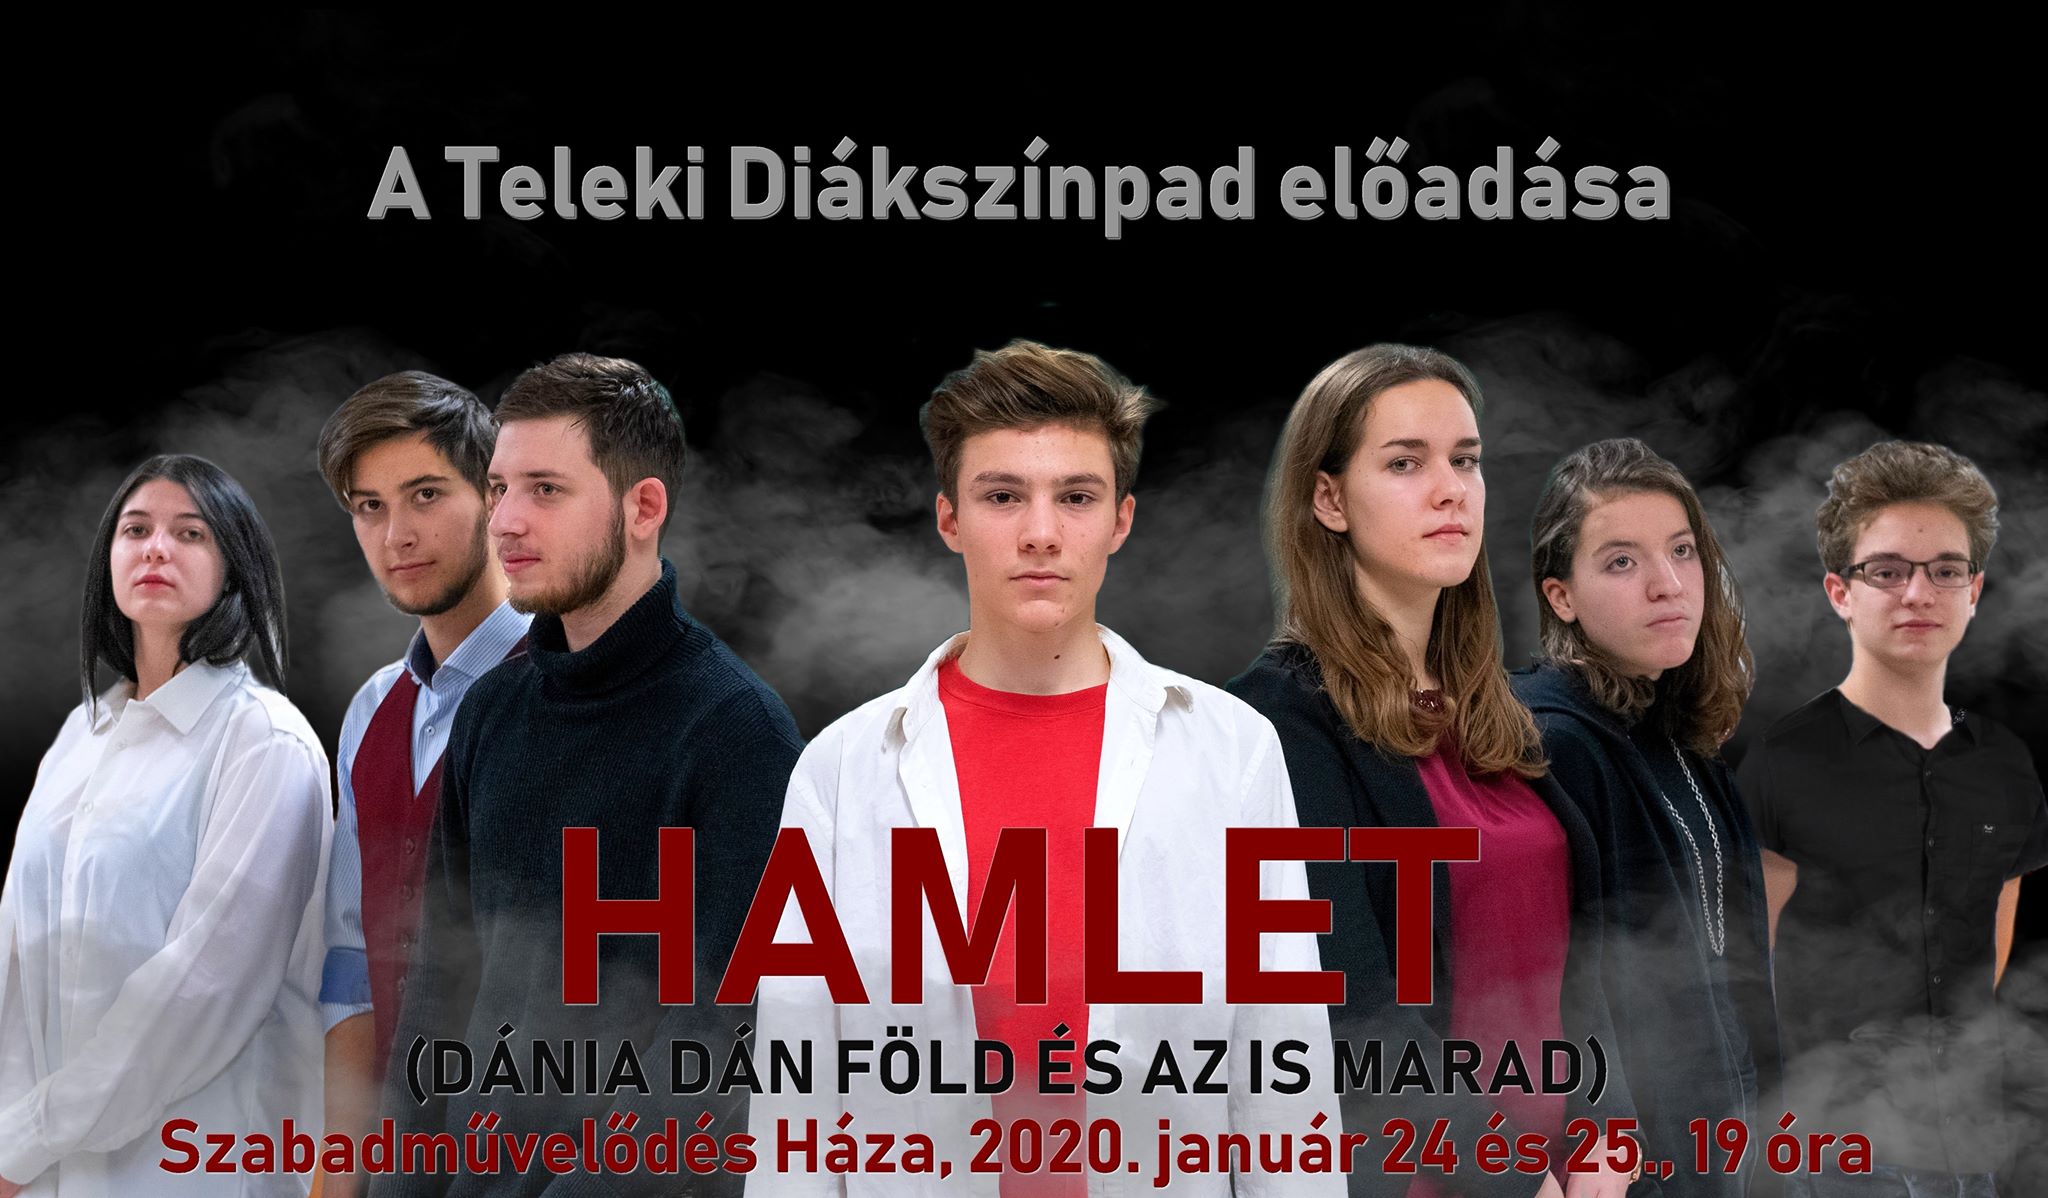 Dánia dán föld és az is marad – Hamlet a Teleki Diákszínpad előadásában